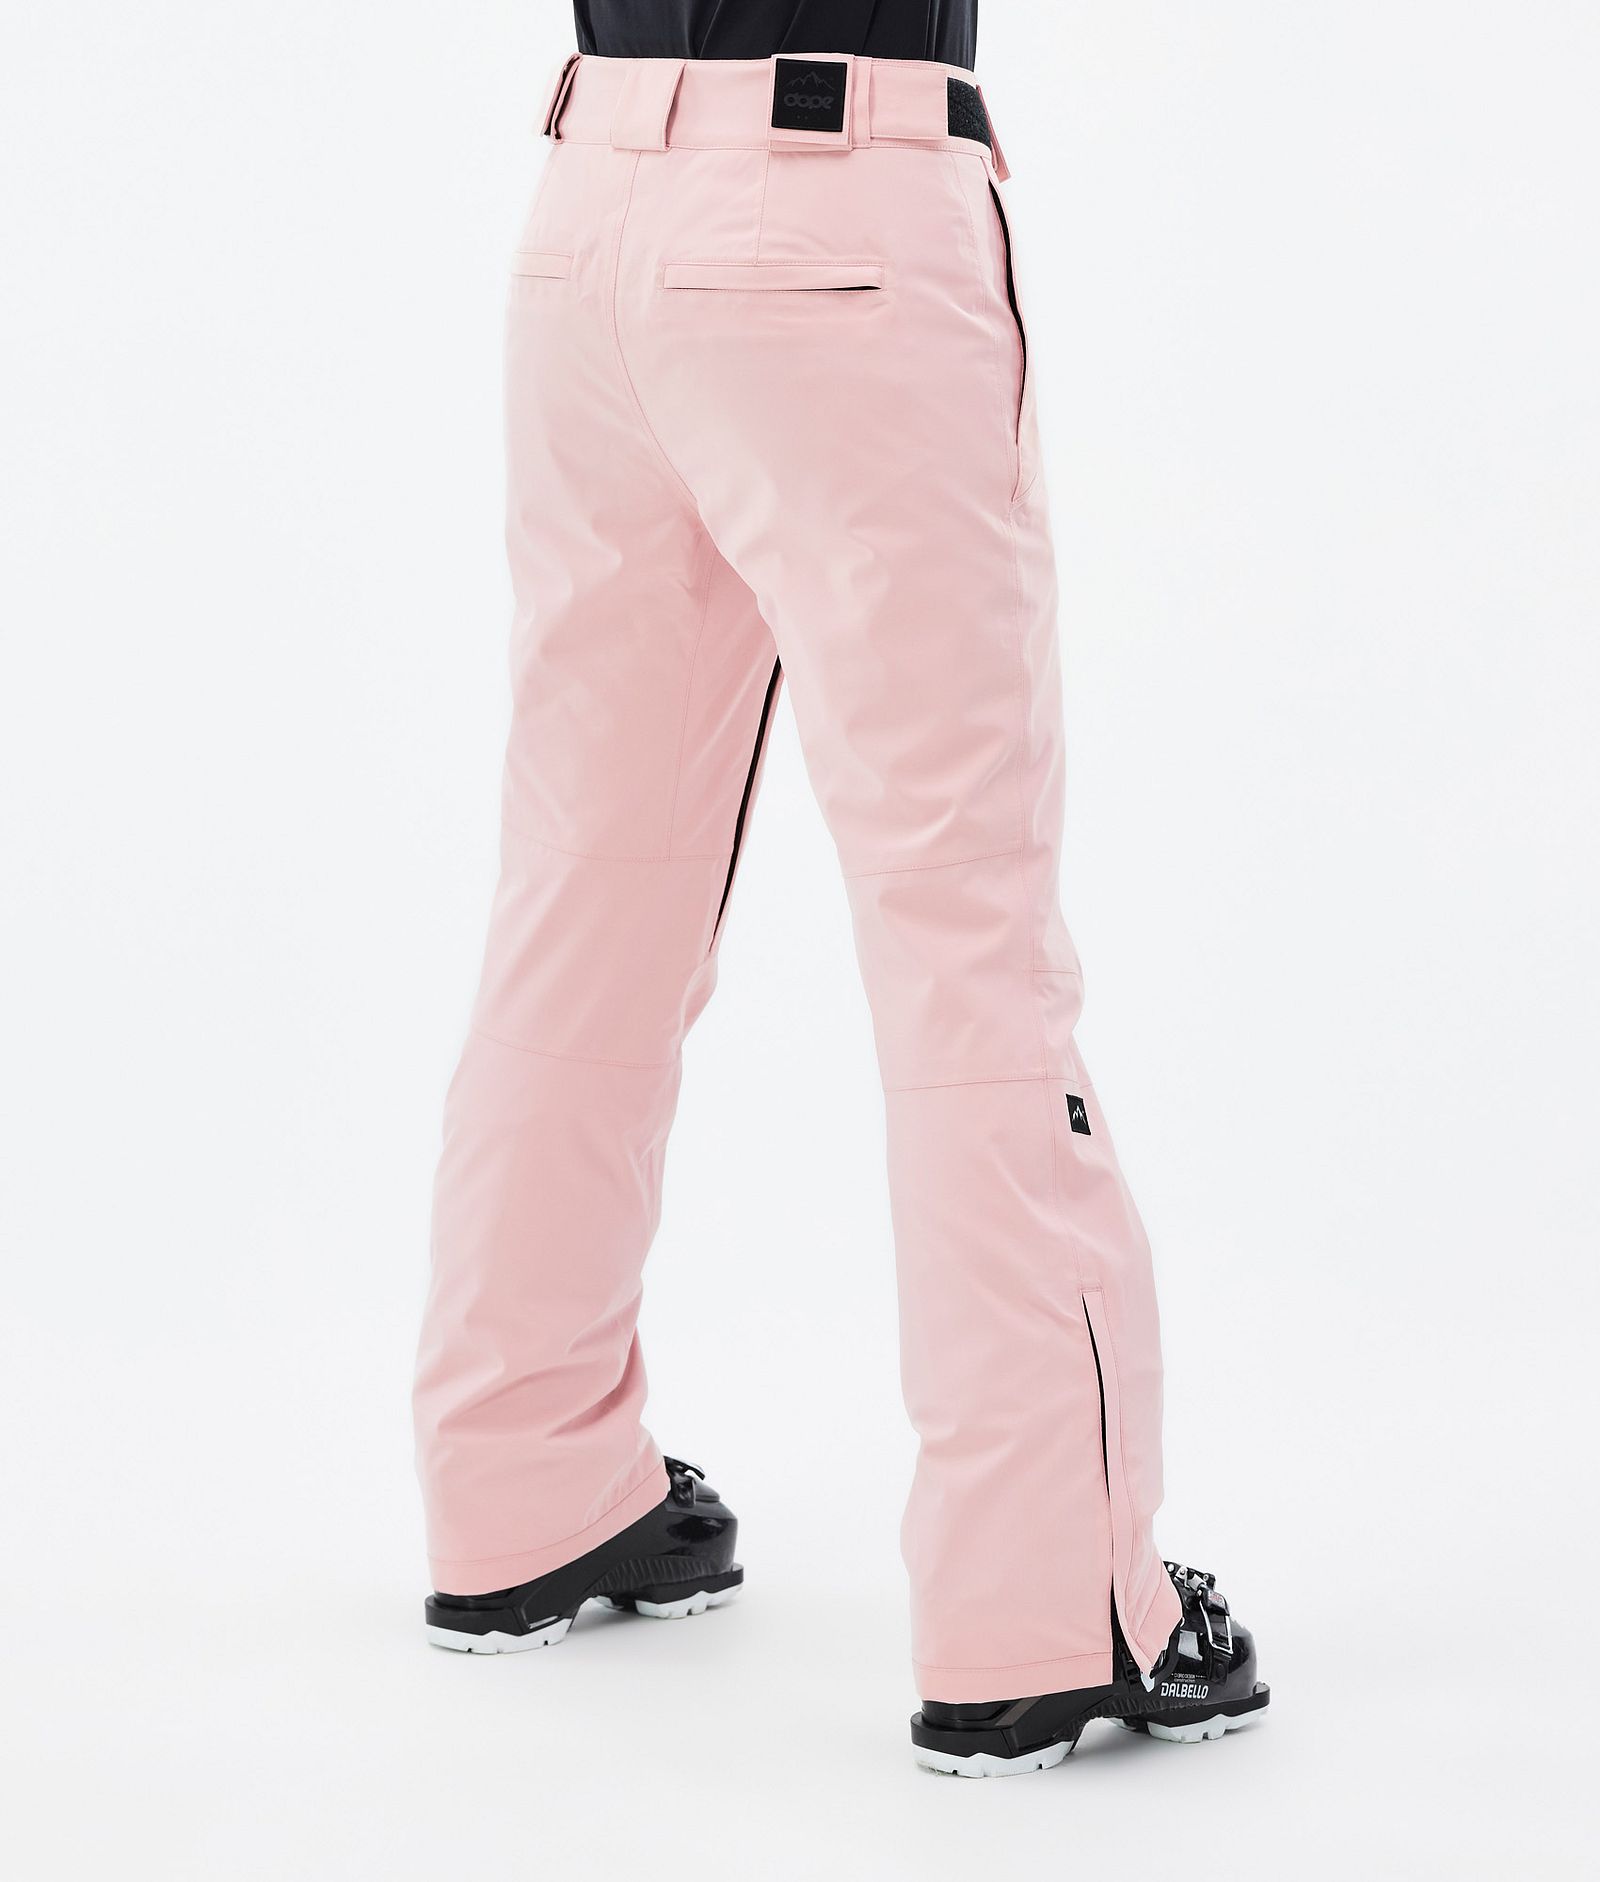 Con W 2022 Spodnie Narciarskie Kobiety Soft Pink